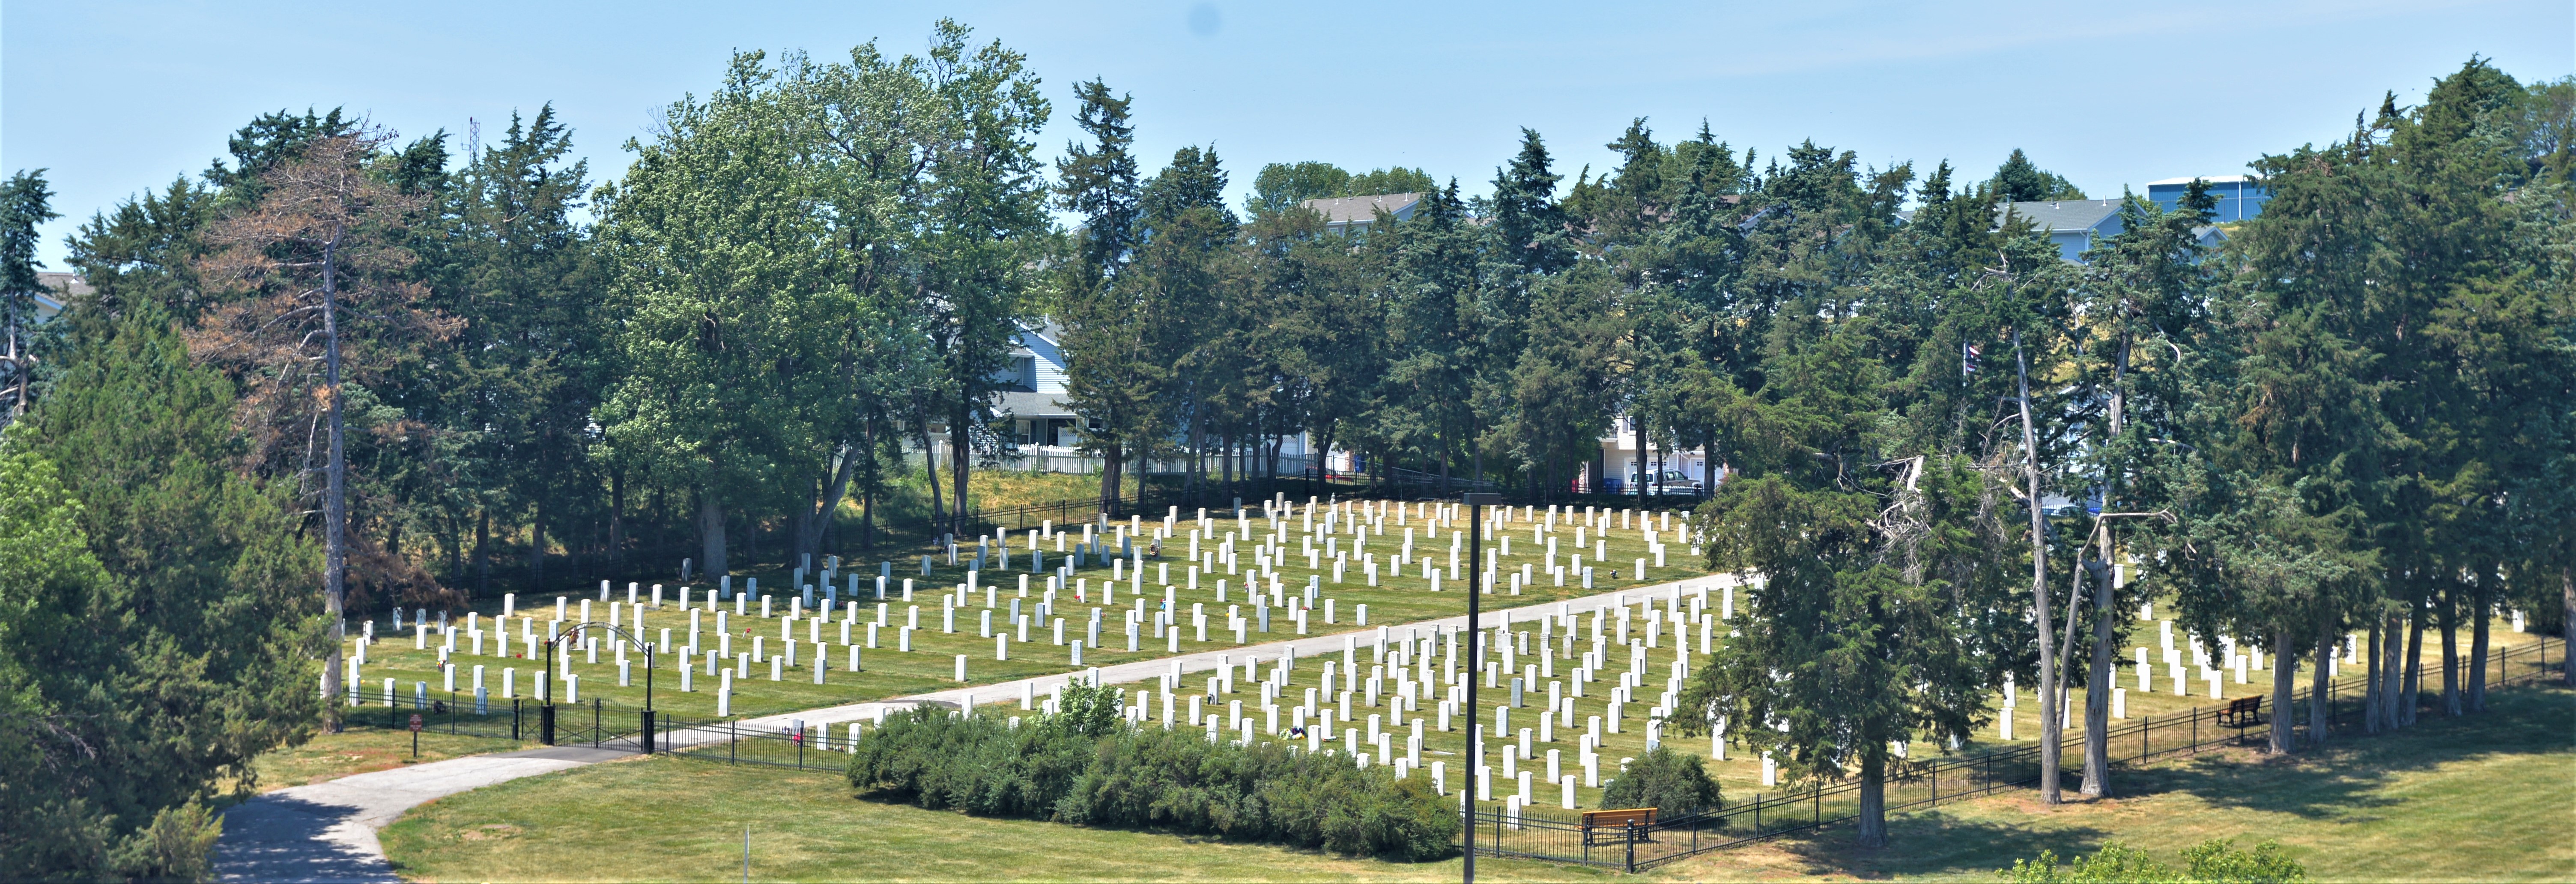 Offutt Cemetery